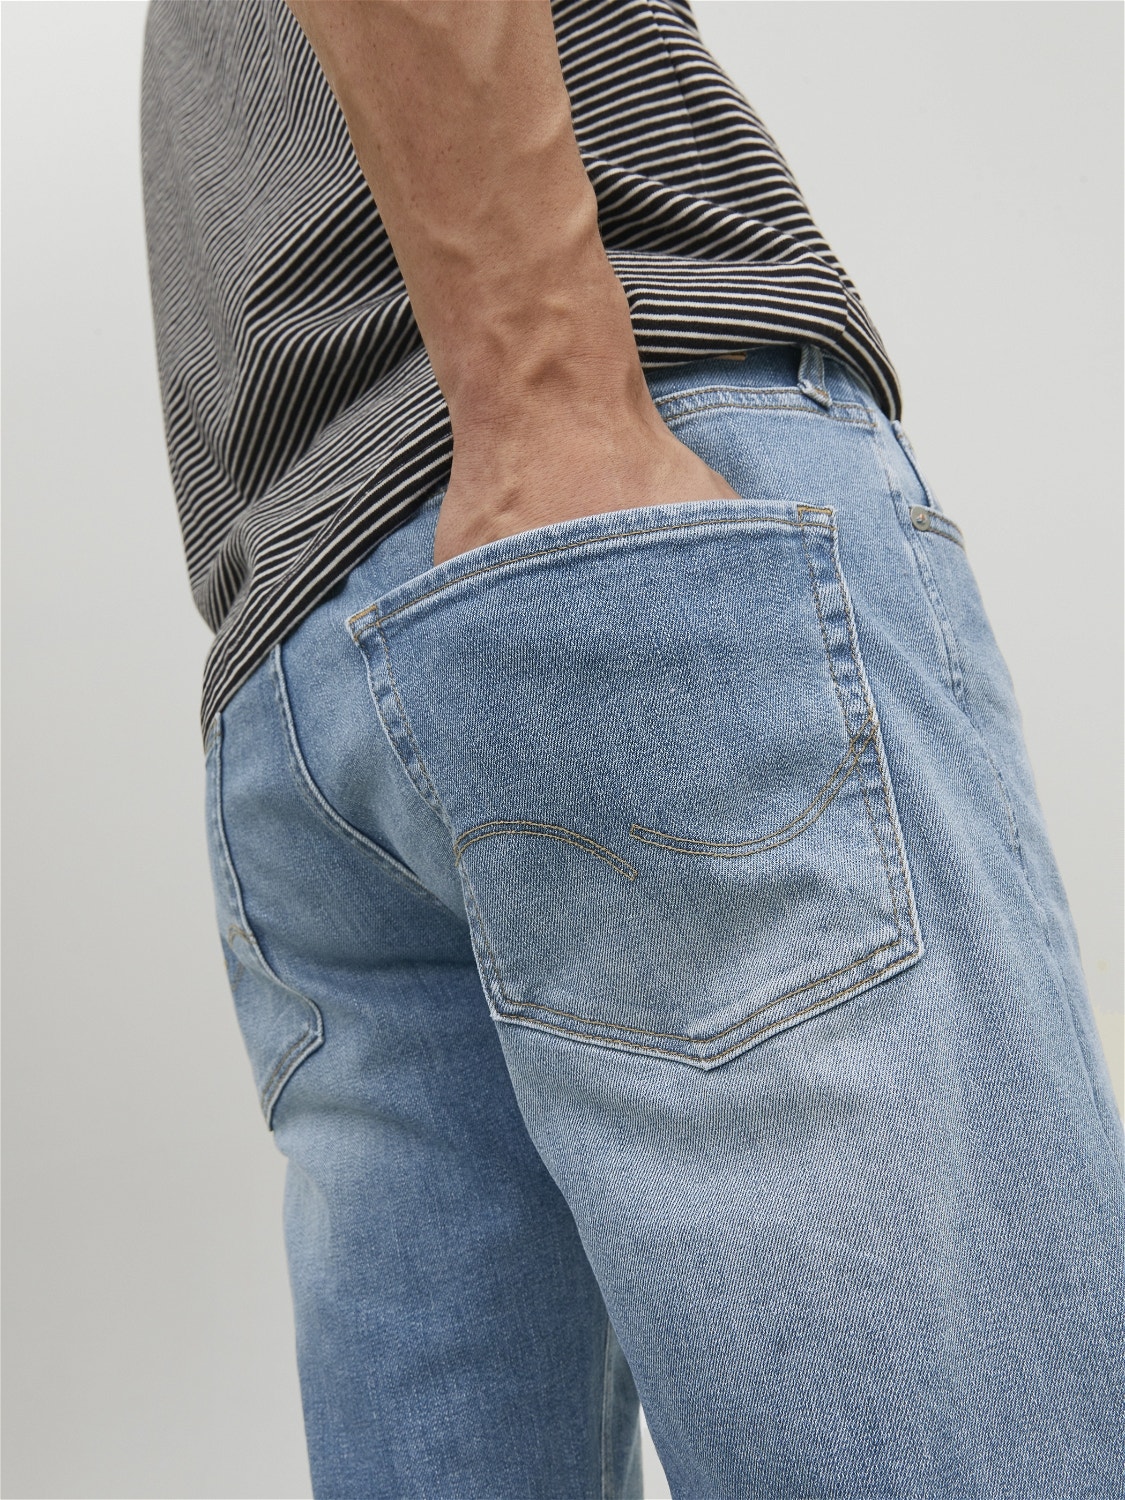 Jack & Jones JJIMIKE JJORIGINAL JOS 011 PCW Jeans tapered fit -Blue Denim - 12209630